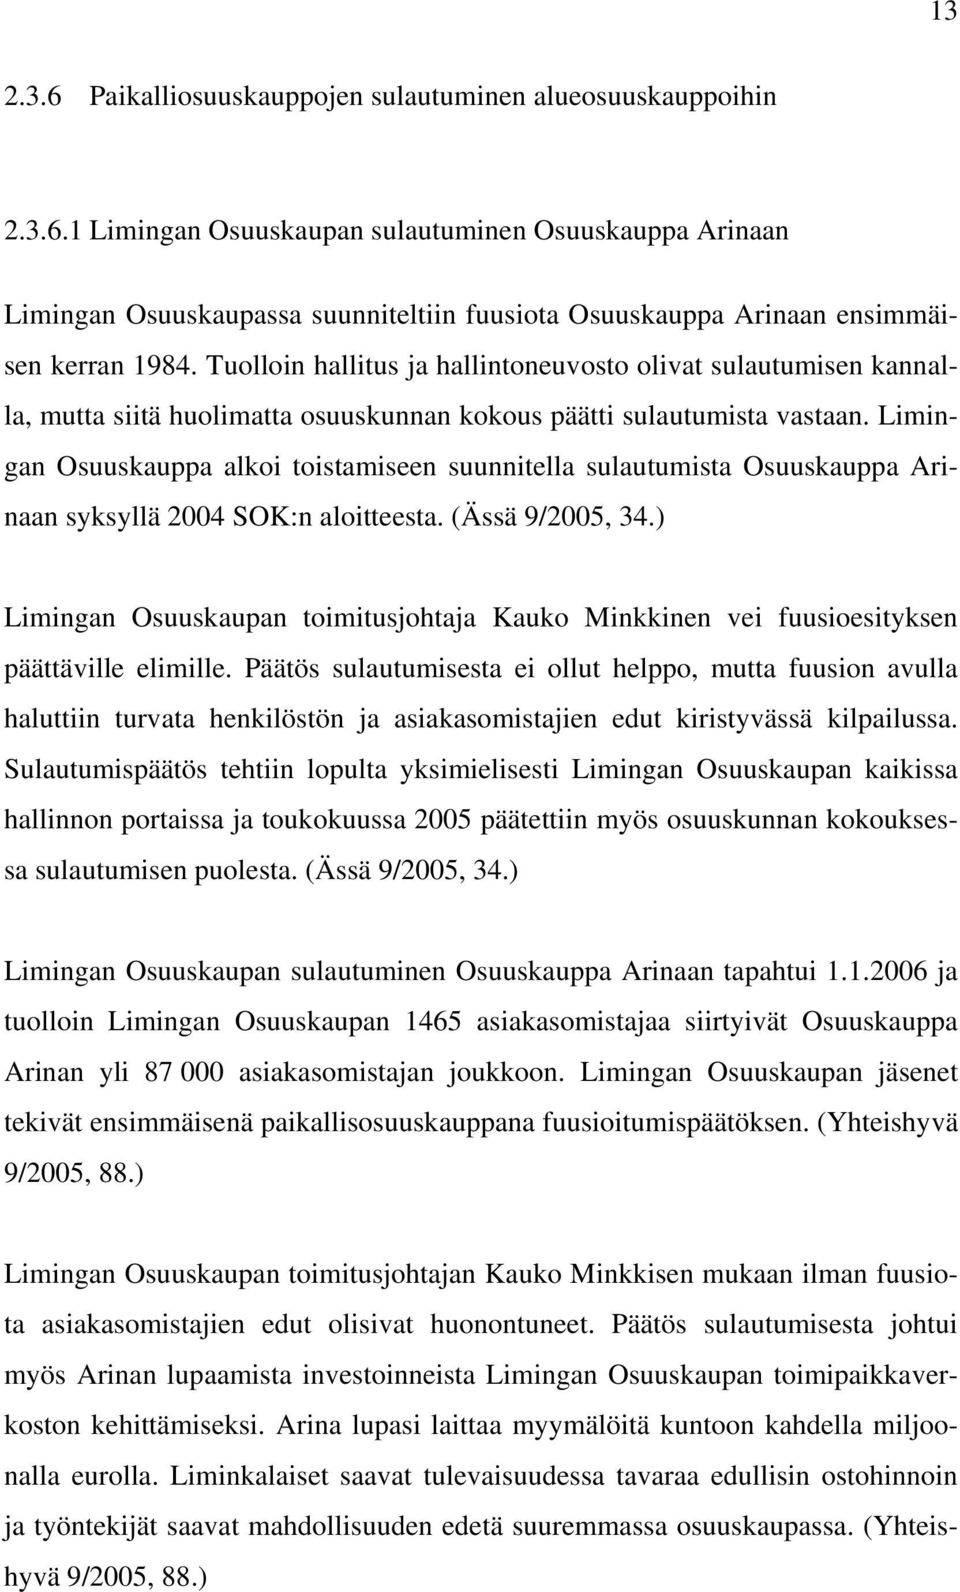 Limingan Osuuskauppa alkoi toistamiseen suunnitella sulautumista Osuuskauppa Arinaan syksyllä 2004 SOK:n aloitteesta. (Ässä 9/2005, 34.